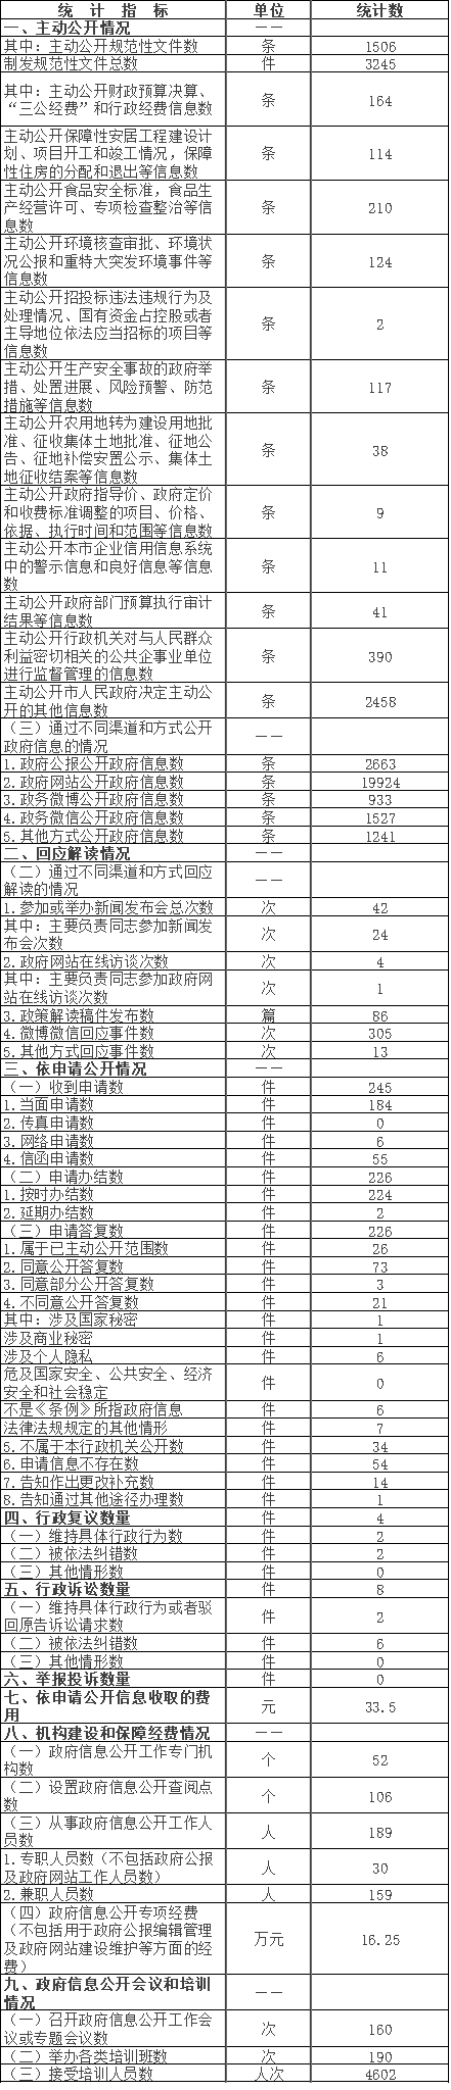 北京市平谷区政府信息公开情况统计表(2016年度)